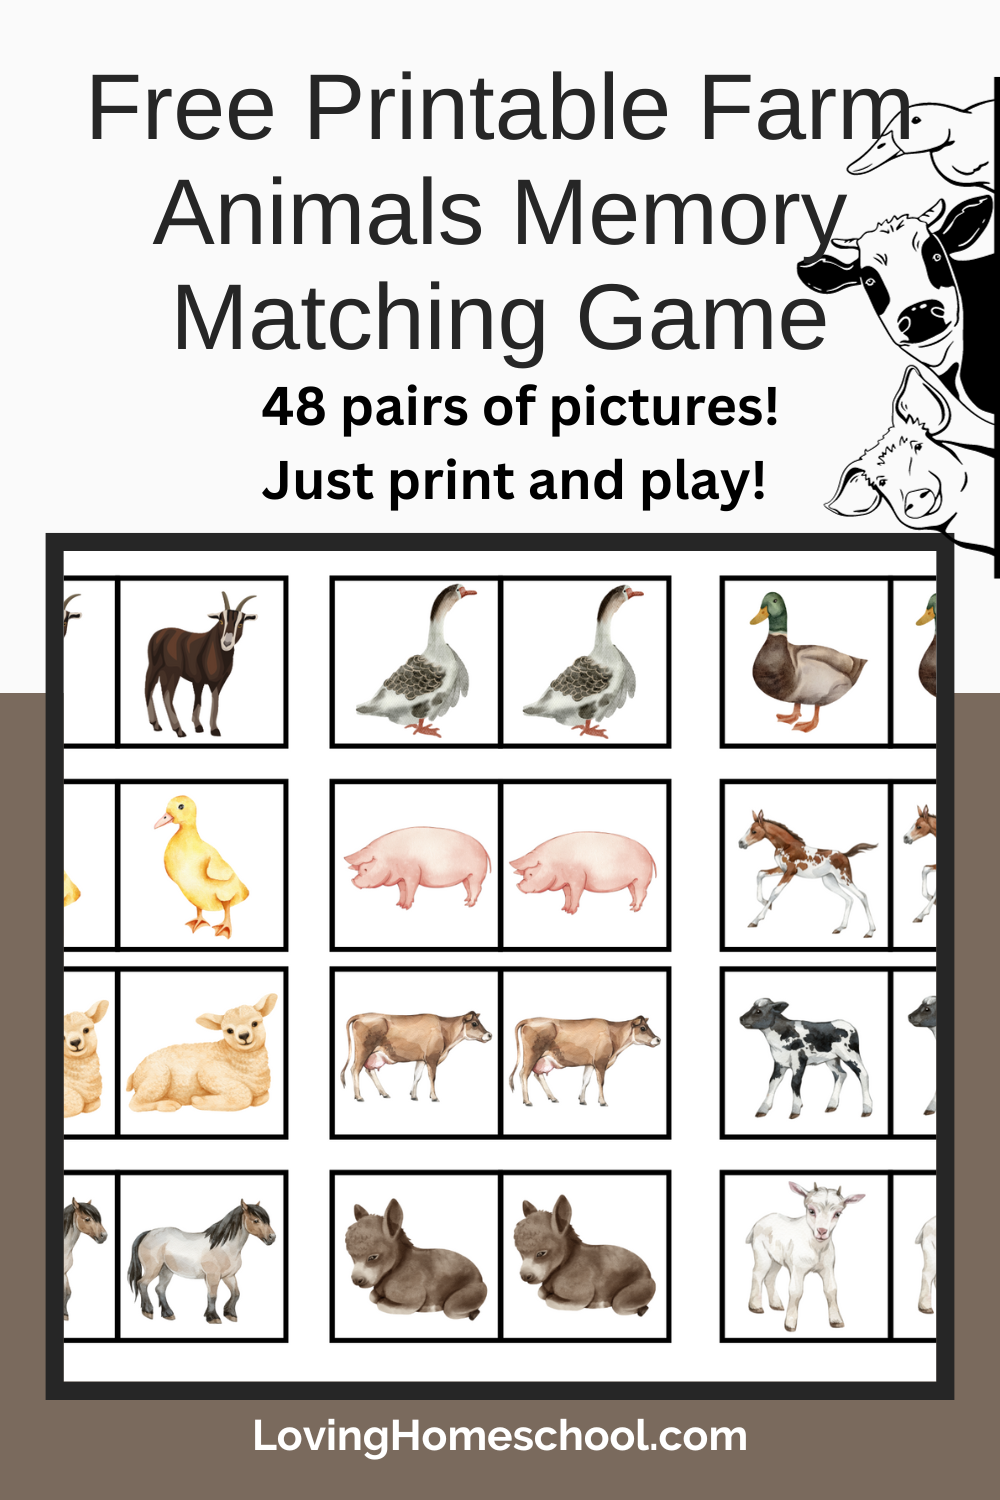 Free Printable Farm Animals Memory Matching Game Pinterest Pin